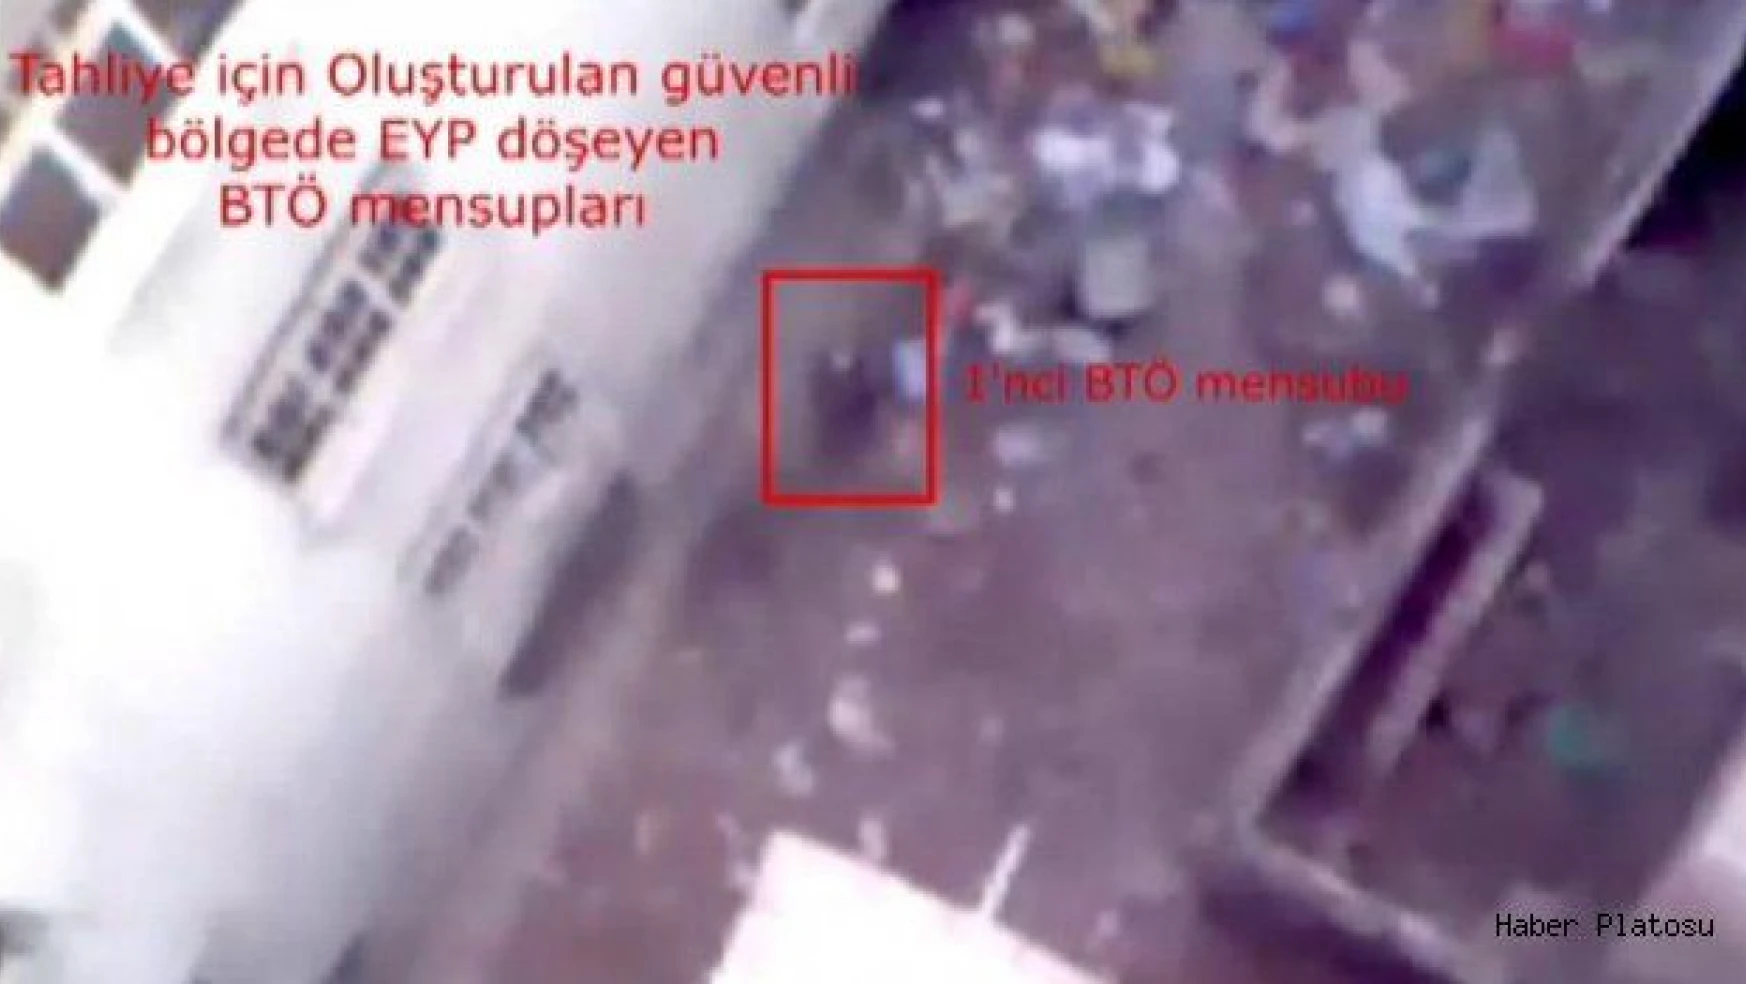 Güvenlik koridoru yakınına patlayıcı yerleştirilme anı görüntülendi (VİDEO)